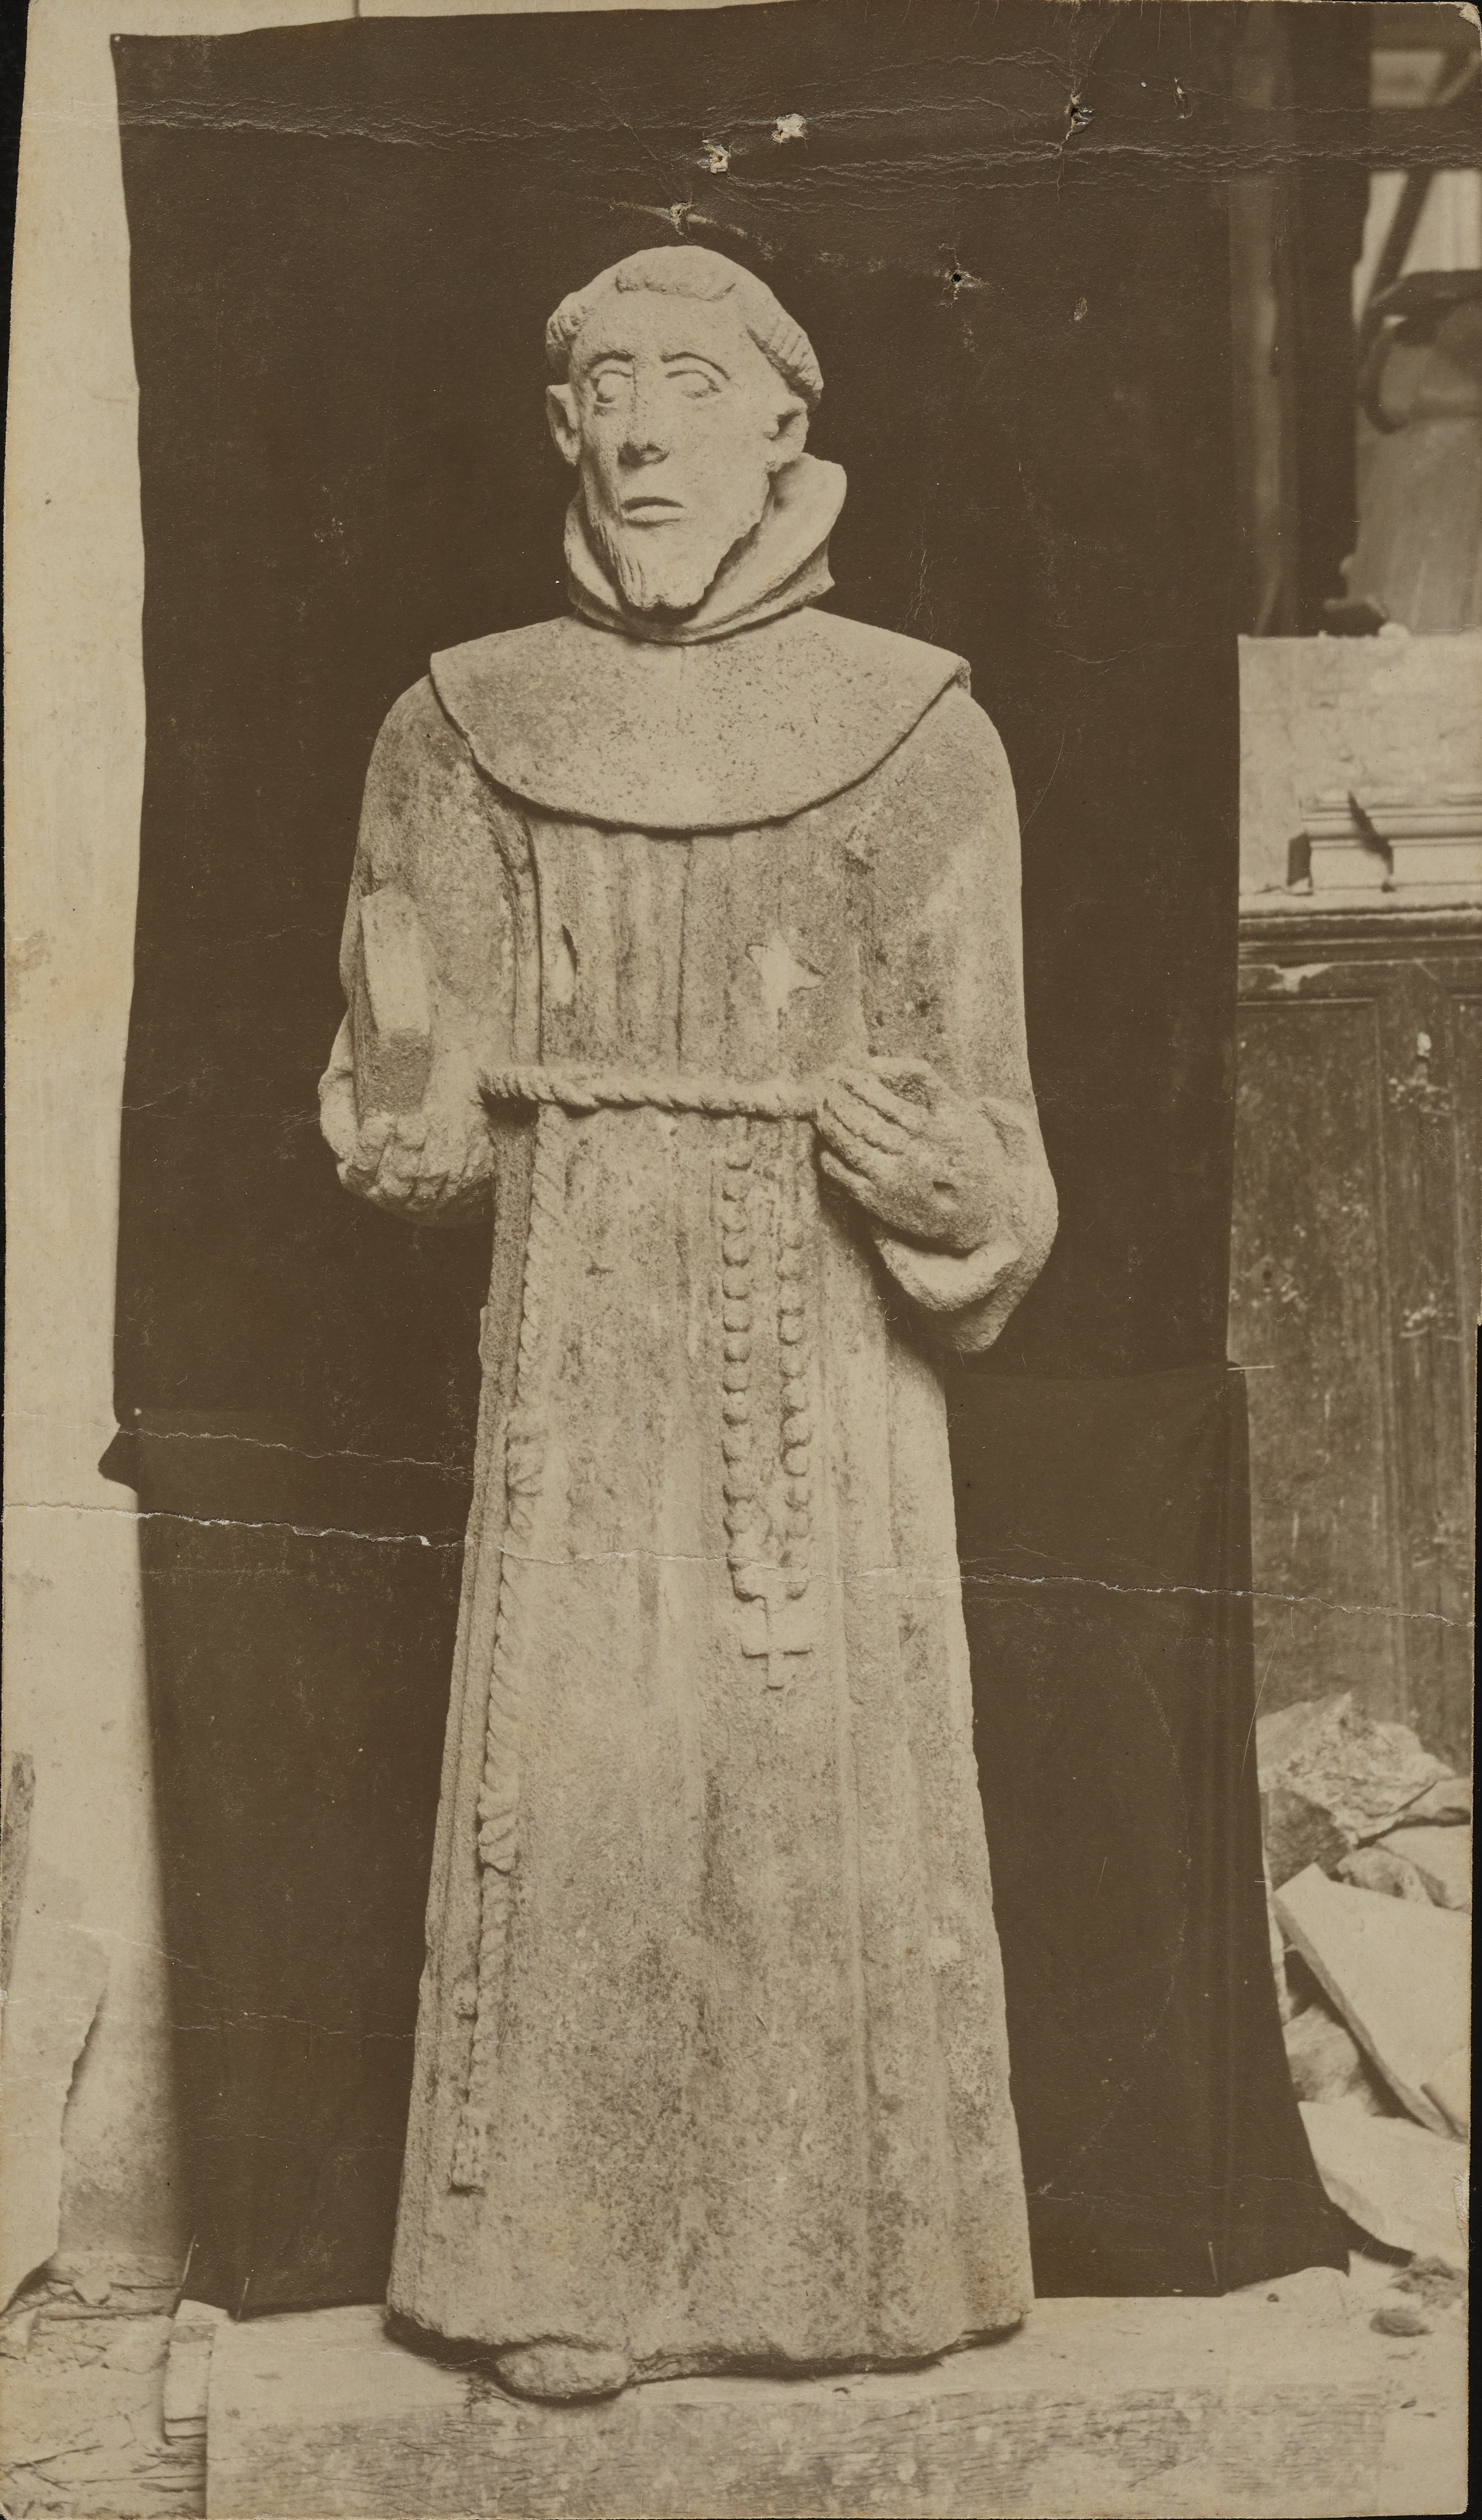 Fotografo non identificato, Cosenza - Chiesa di S. Francesco, S. Francesco, 1901-1925, gelatina ai sali d'argento, MPI308385